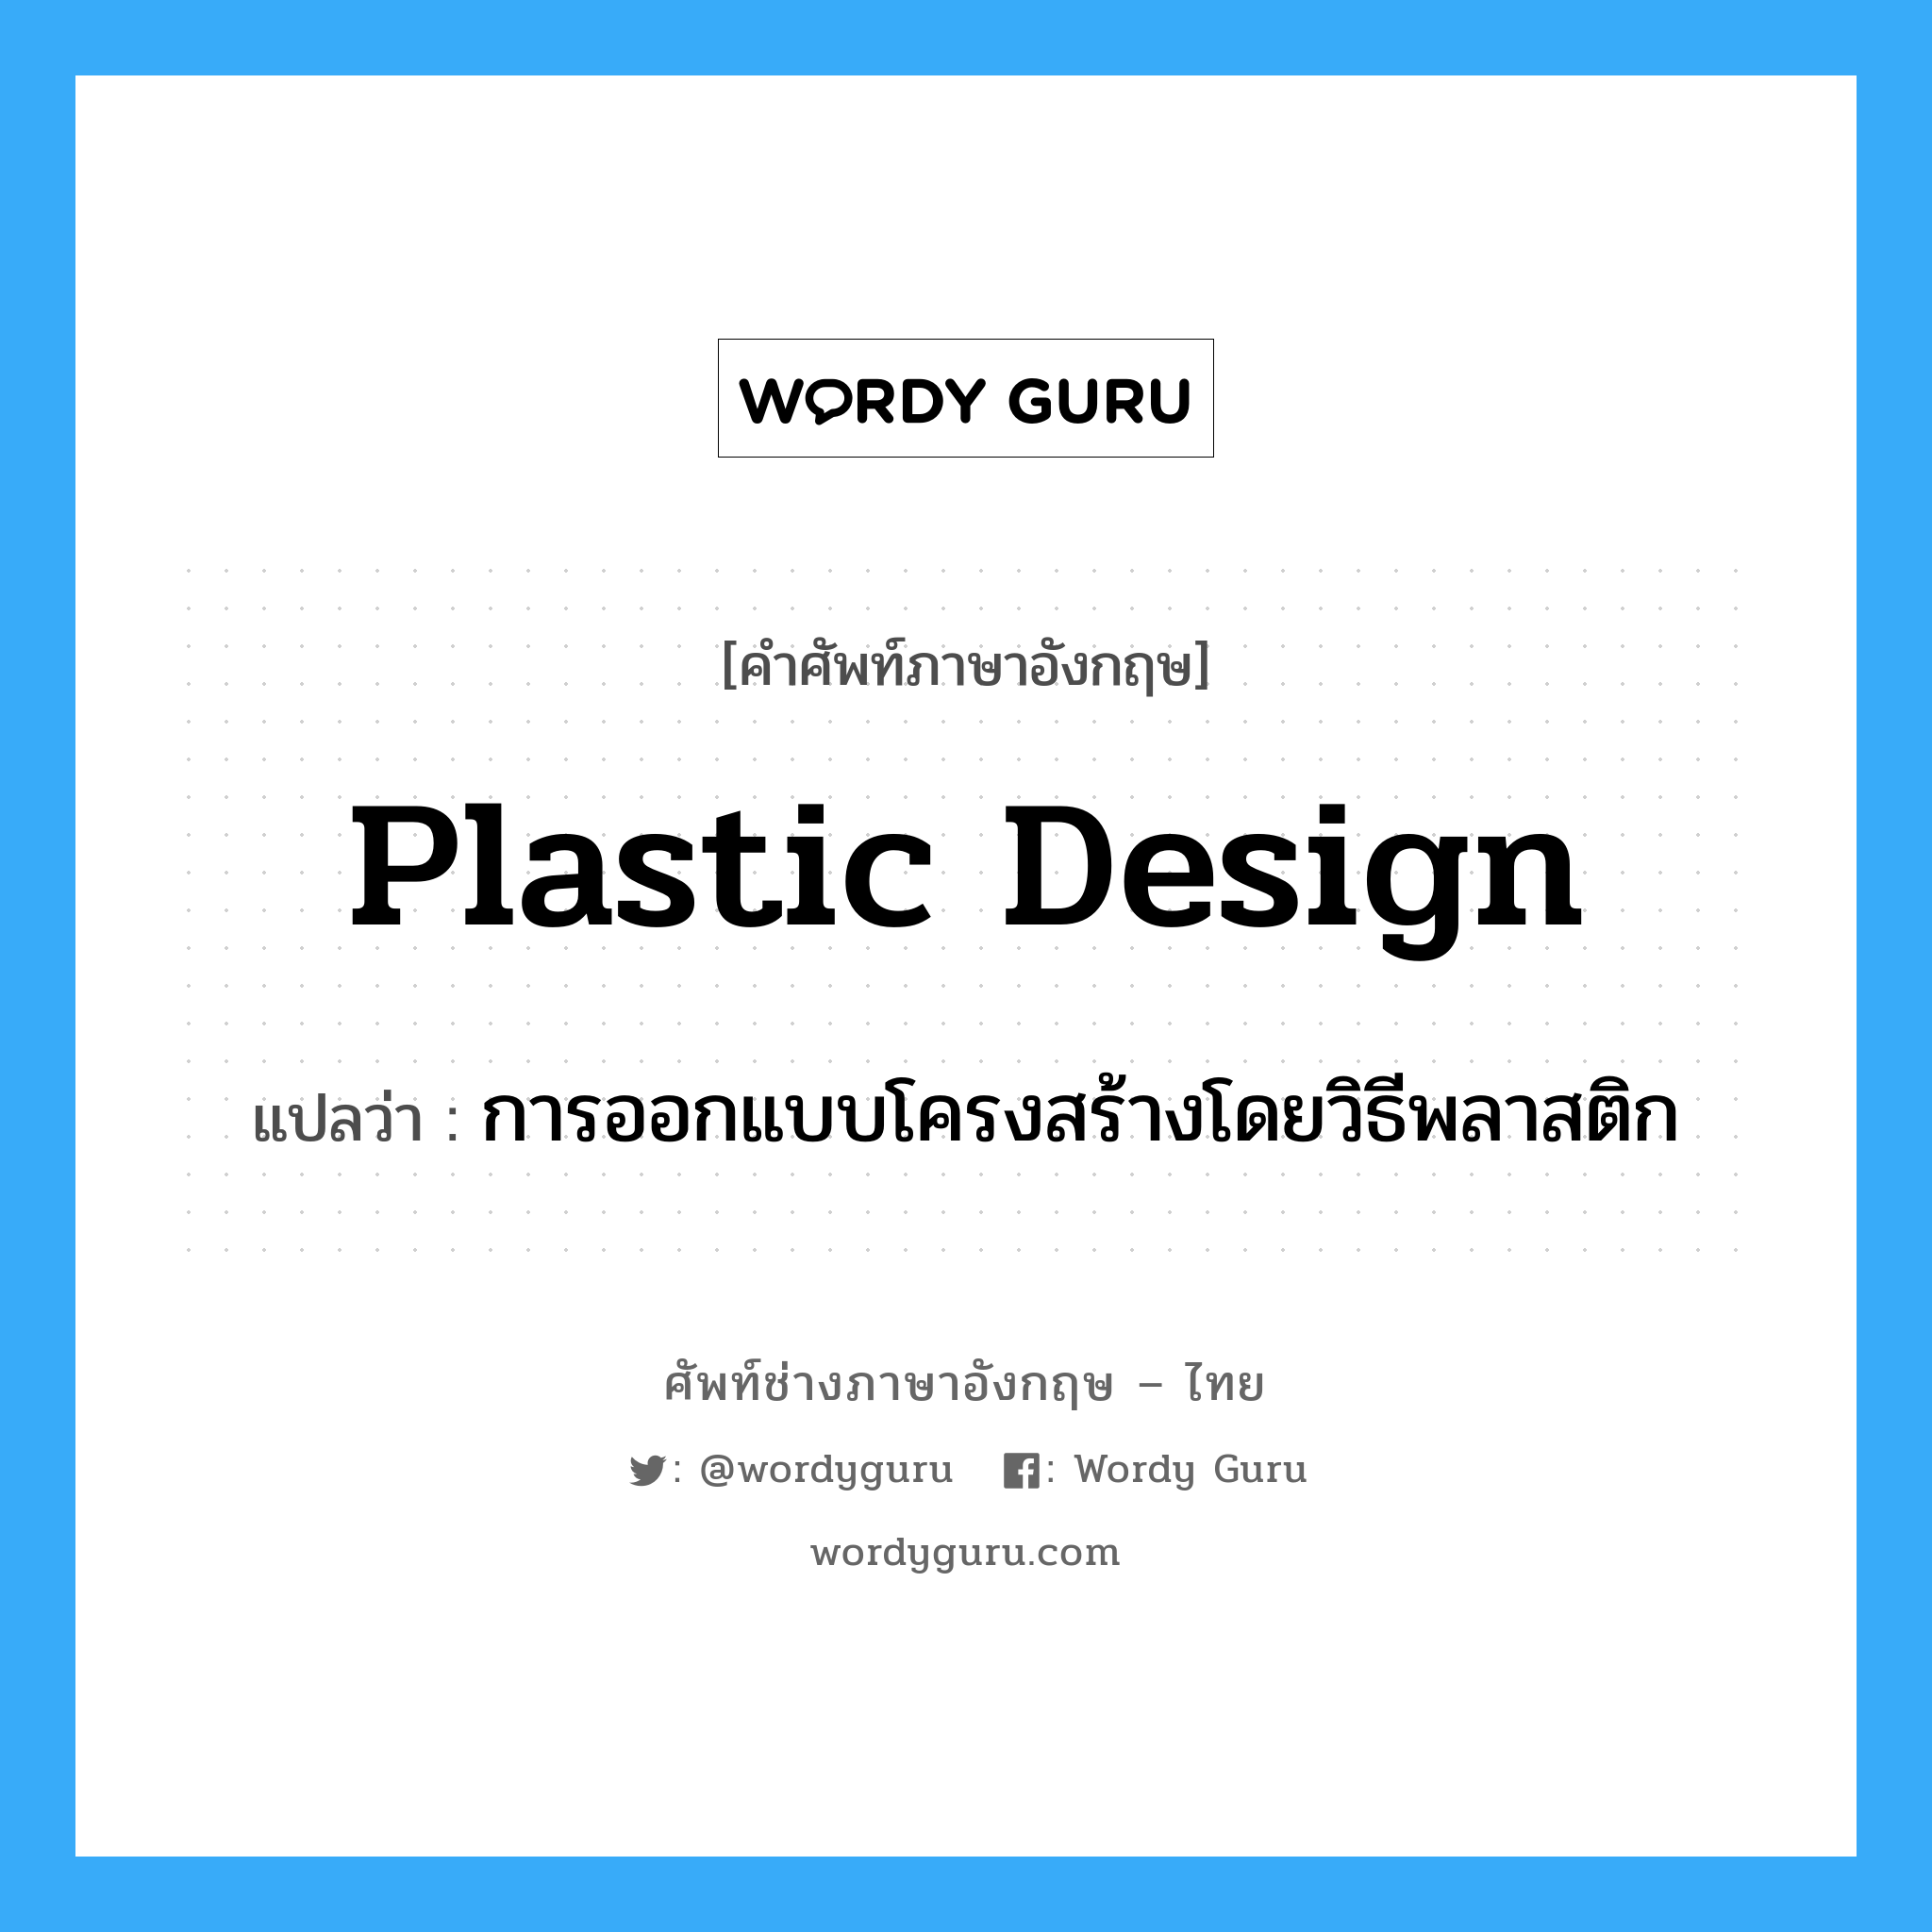 plastic design แปลว่า?, คำศัพท์ช่างภาษาอังกฤษ - ไทย plastic design คำศัพท์ภาษาอังกฤษ plastic design แปลว่า การออกแบบโครงสร้างโดยวิธีพลาสติก